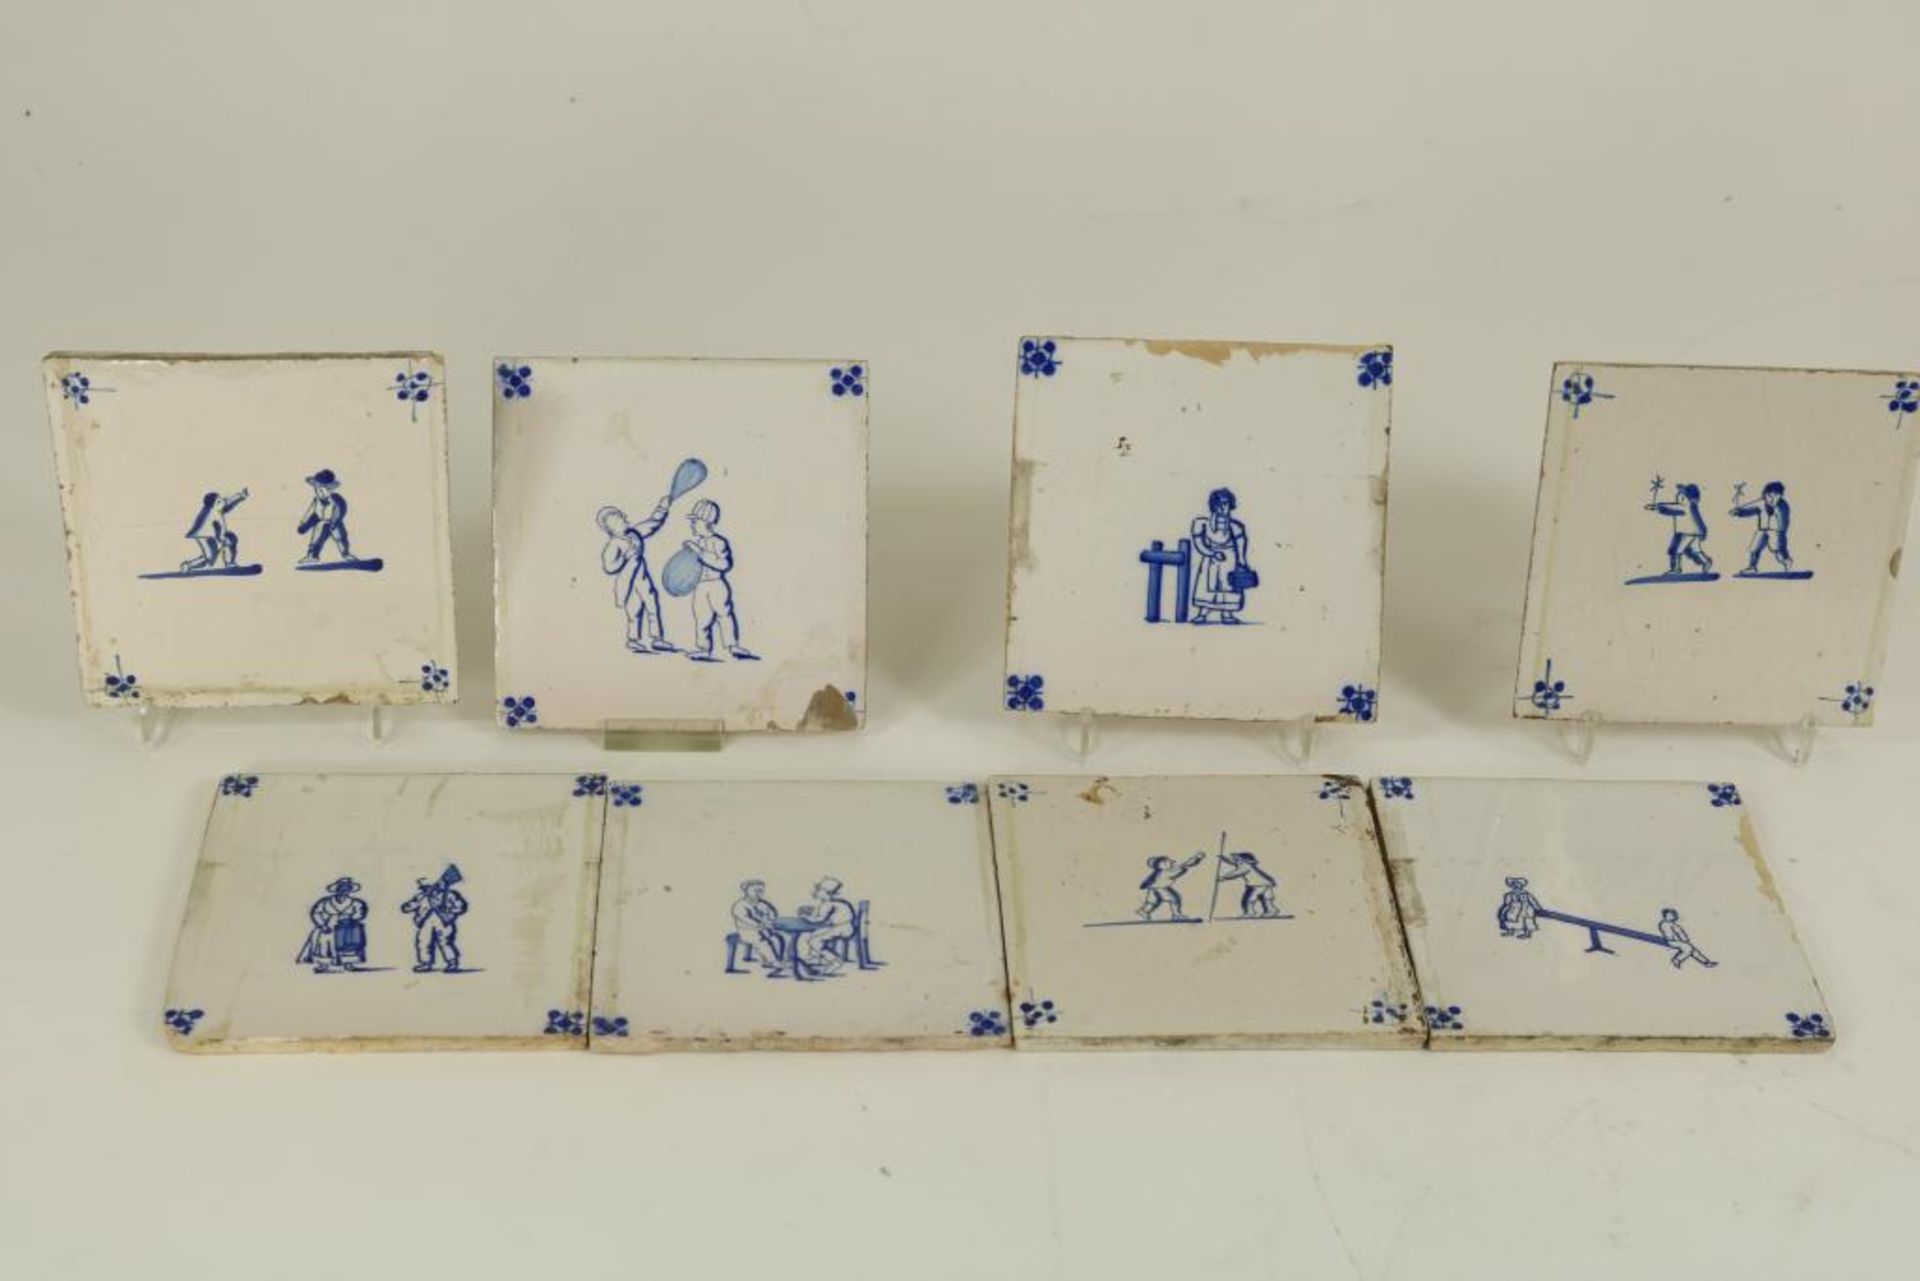 Serie van 8 aardewerk tegels